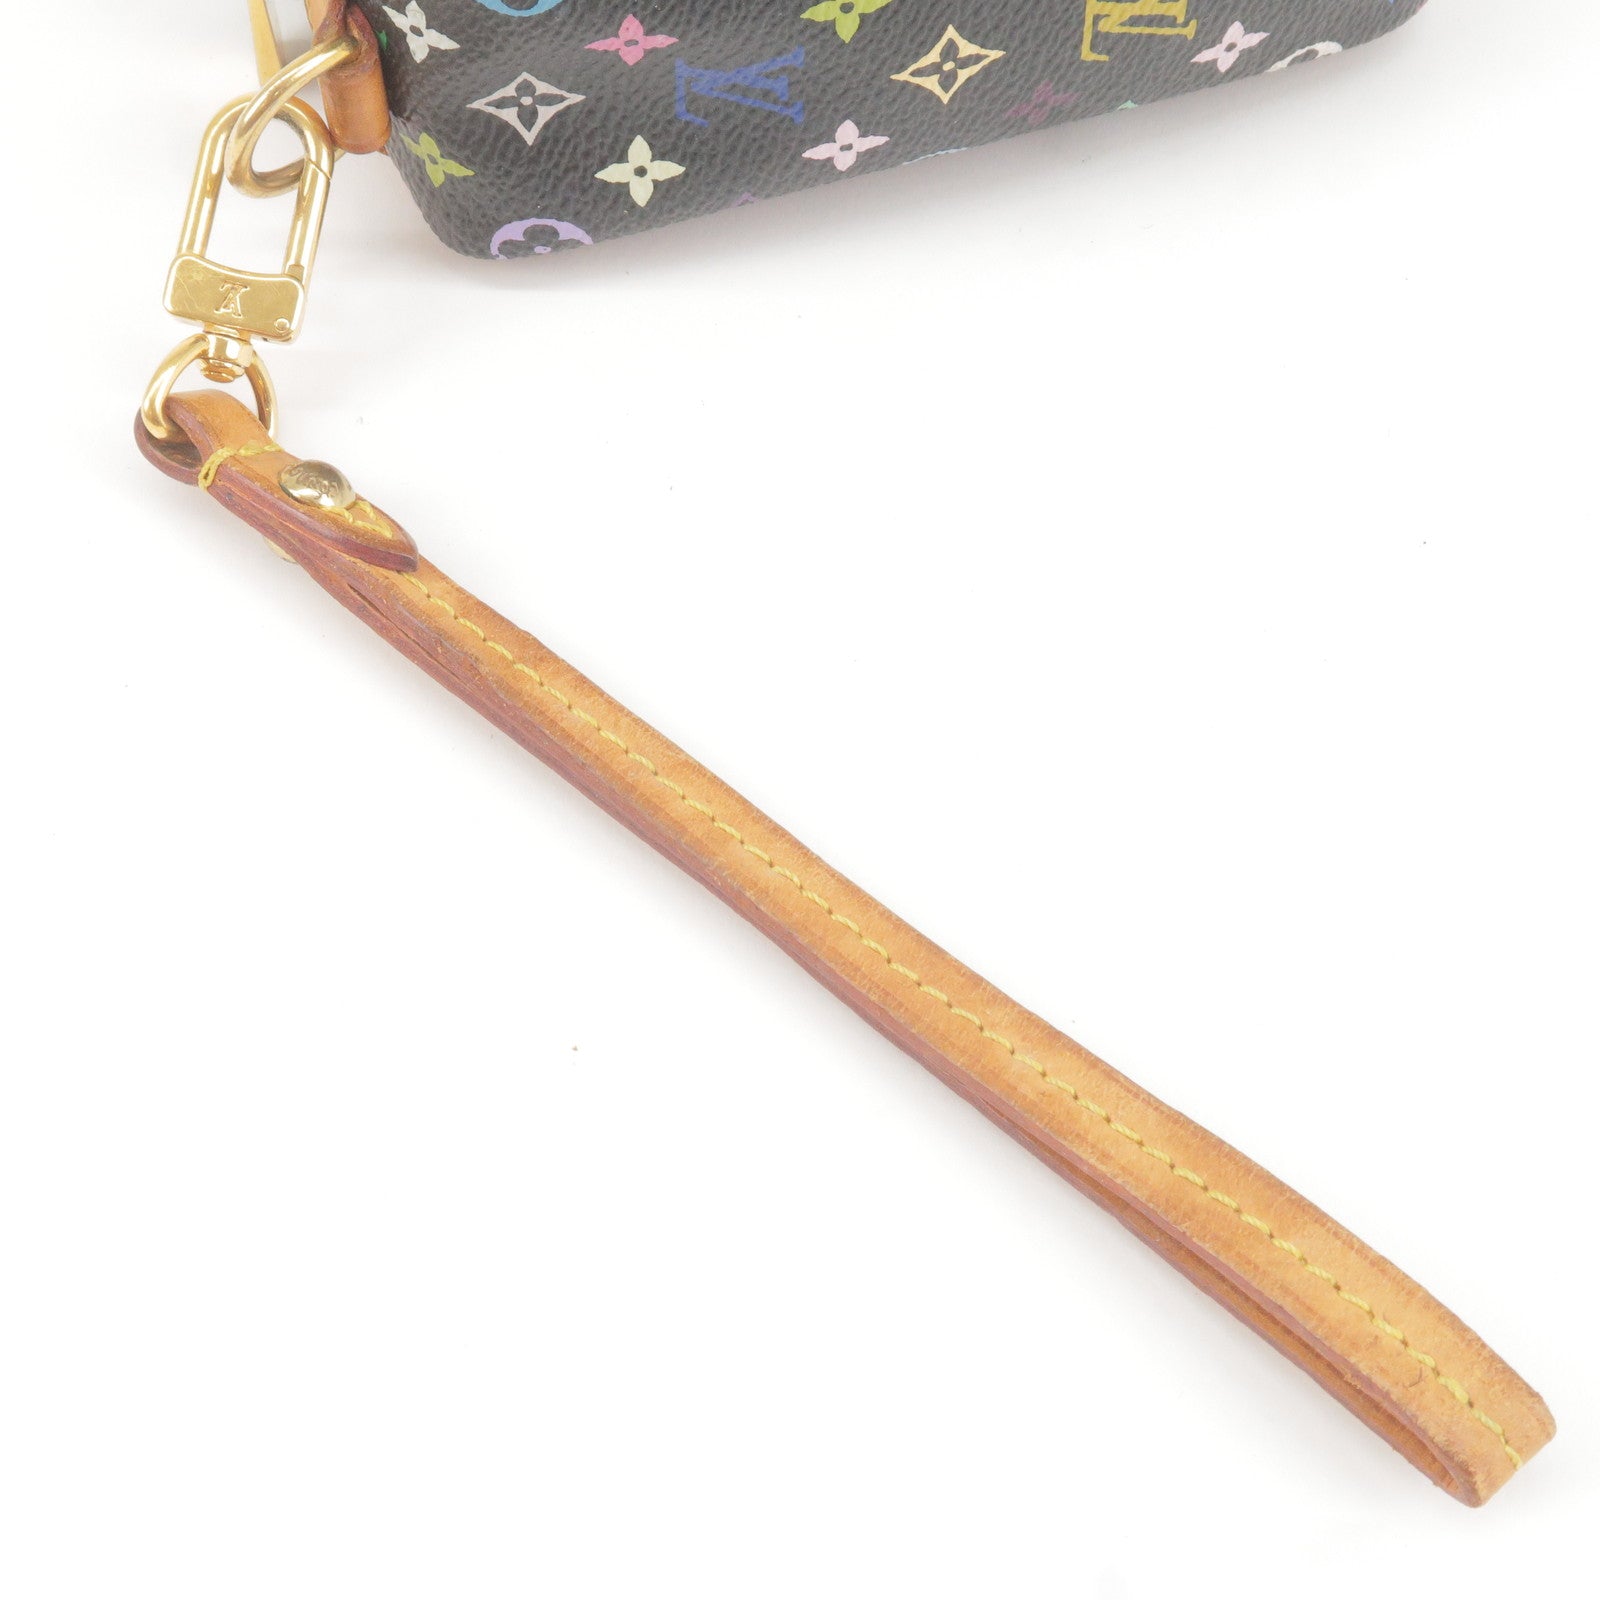 Louis Vuitton Trousse Wapity Mini Pouch Wristlet Bag Monogram Multicolor  12530